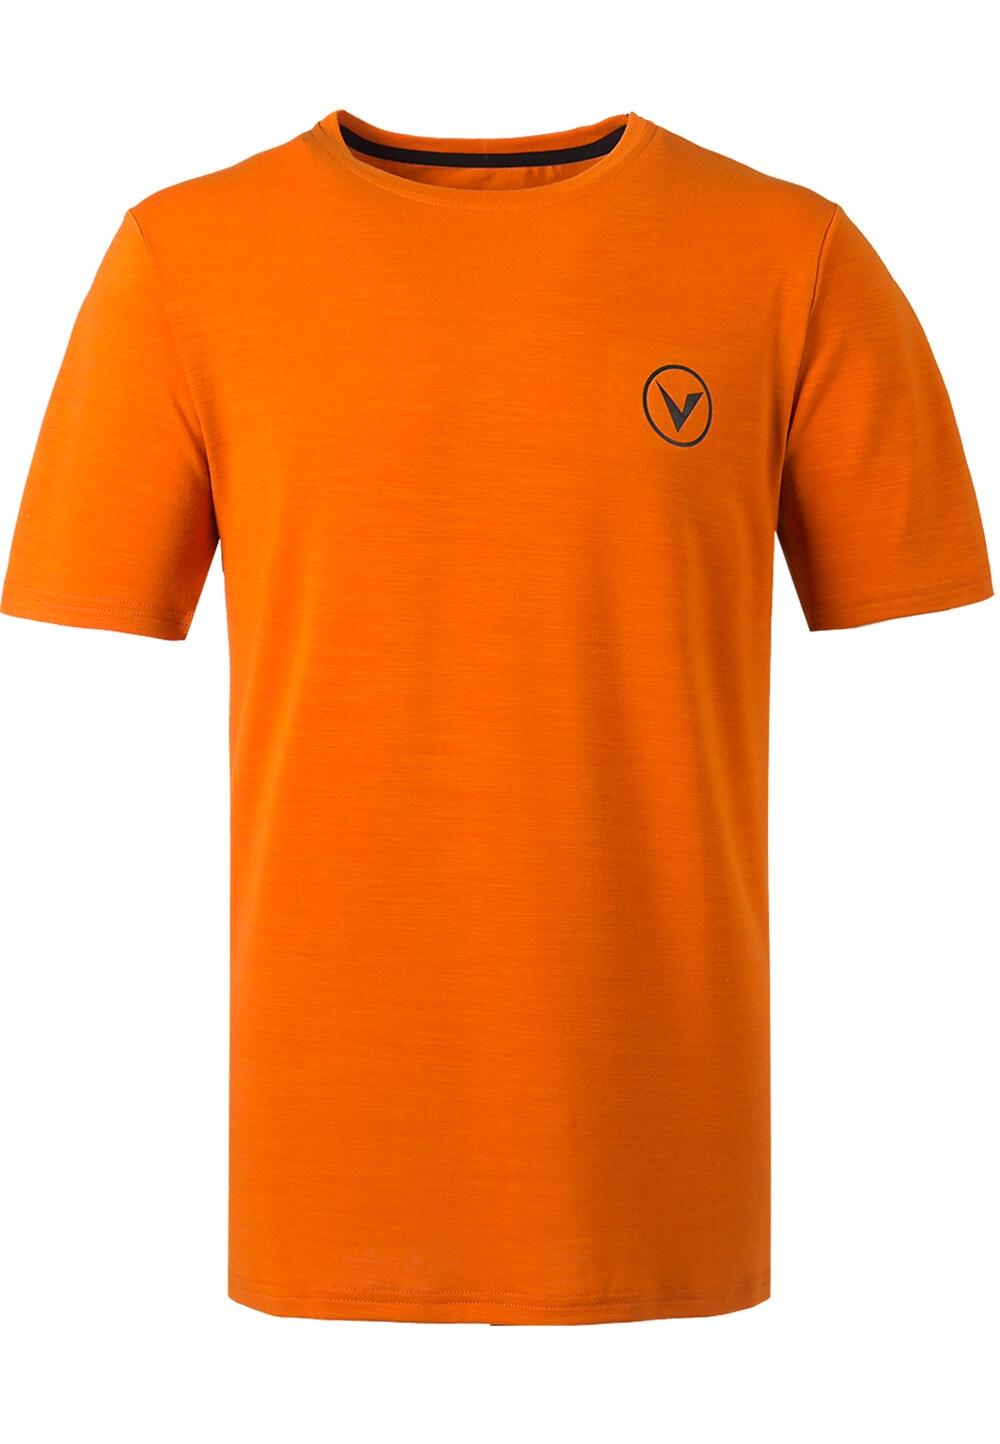 Футболка для выступлений Virtus Joker, апельсин футболка для выступлений virtus joker апельсин